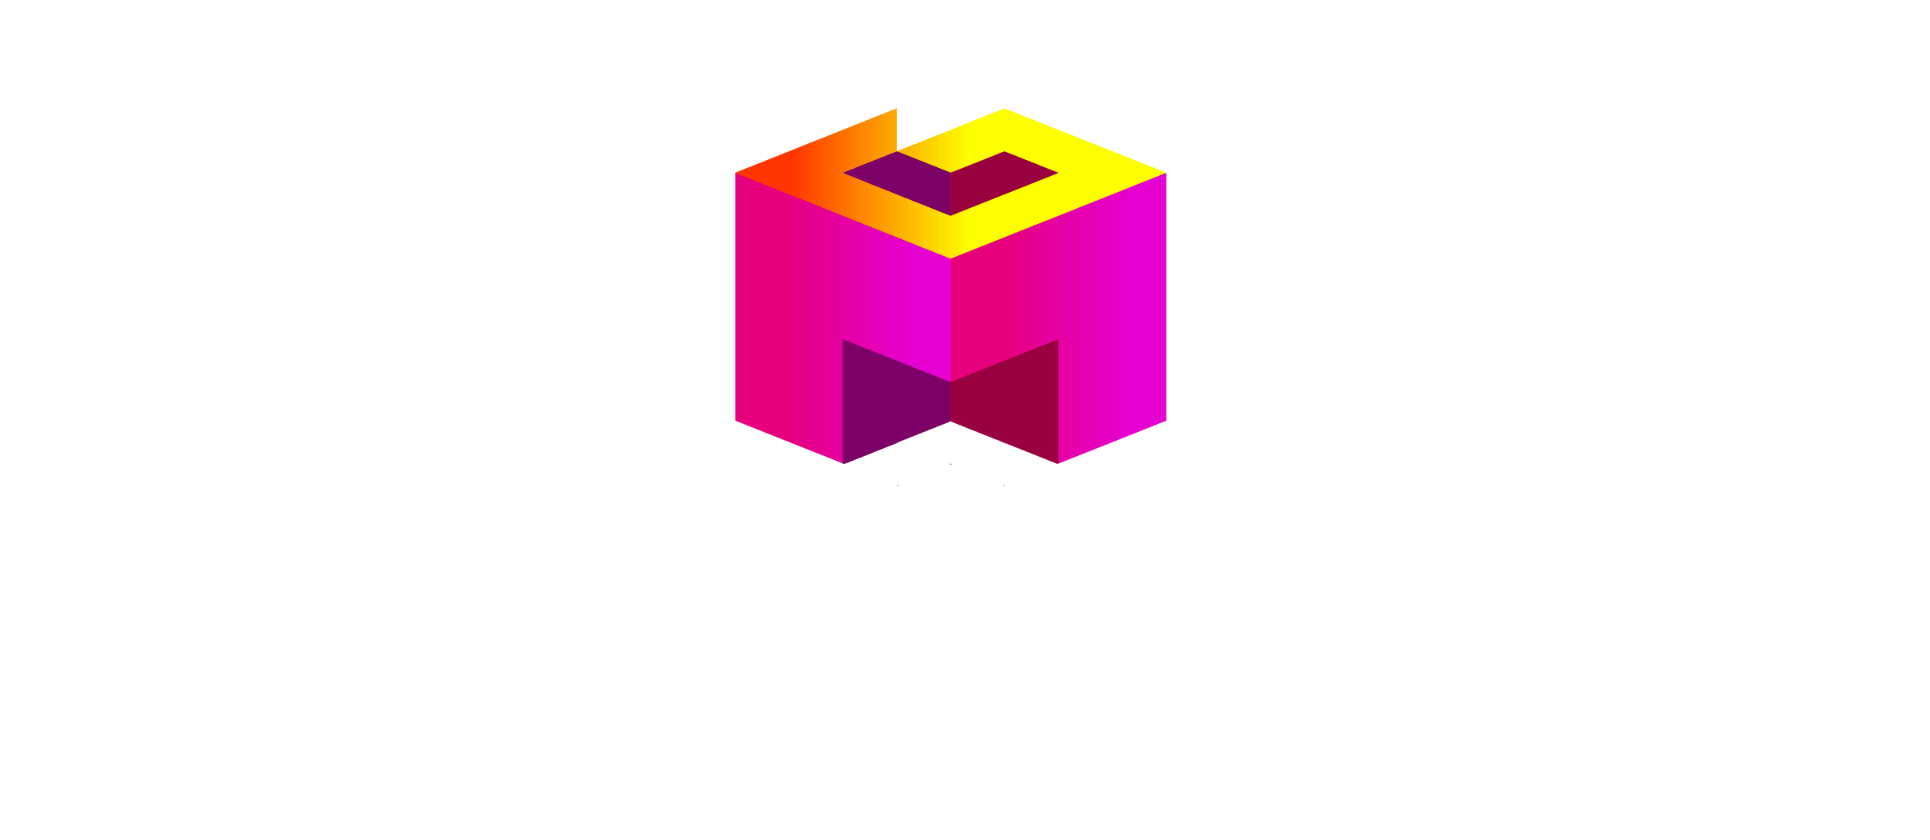 Meta games logo